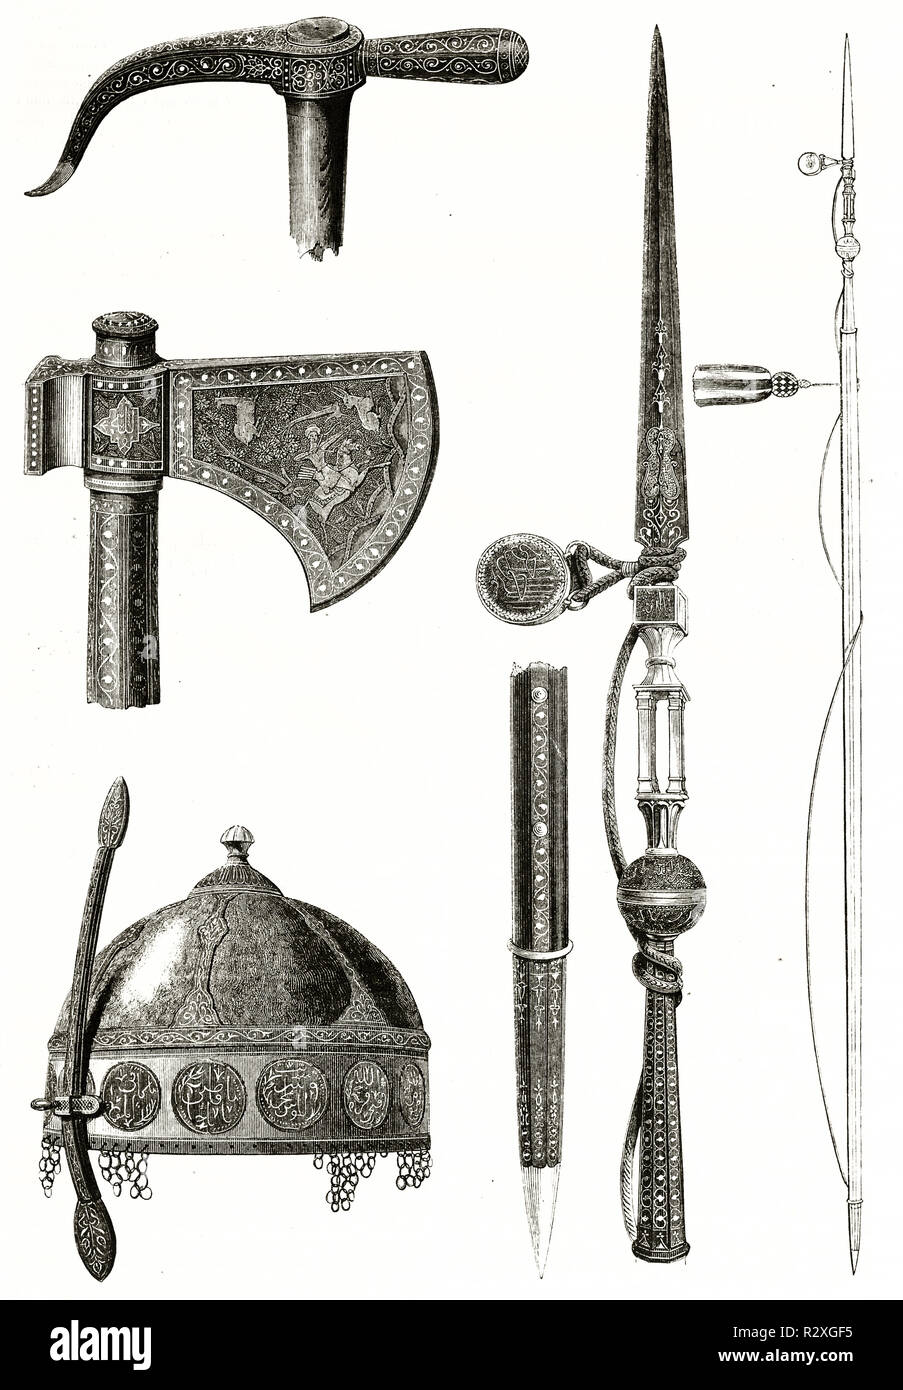 Vecchia illustrazione del Sultano d'Egitto Tuman Bay II armi. Da autore non identificato, publ. su Magasin pittoresco, Parigi, 1846 Foto Stock